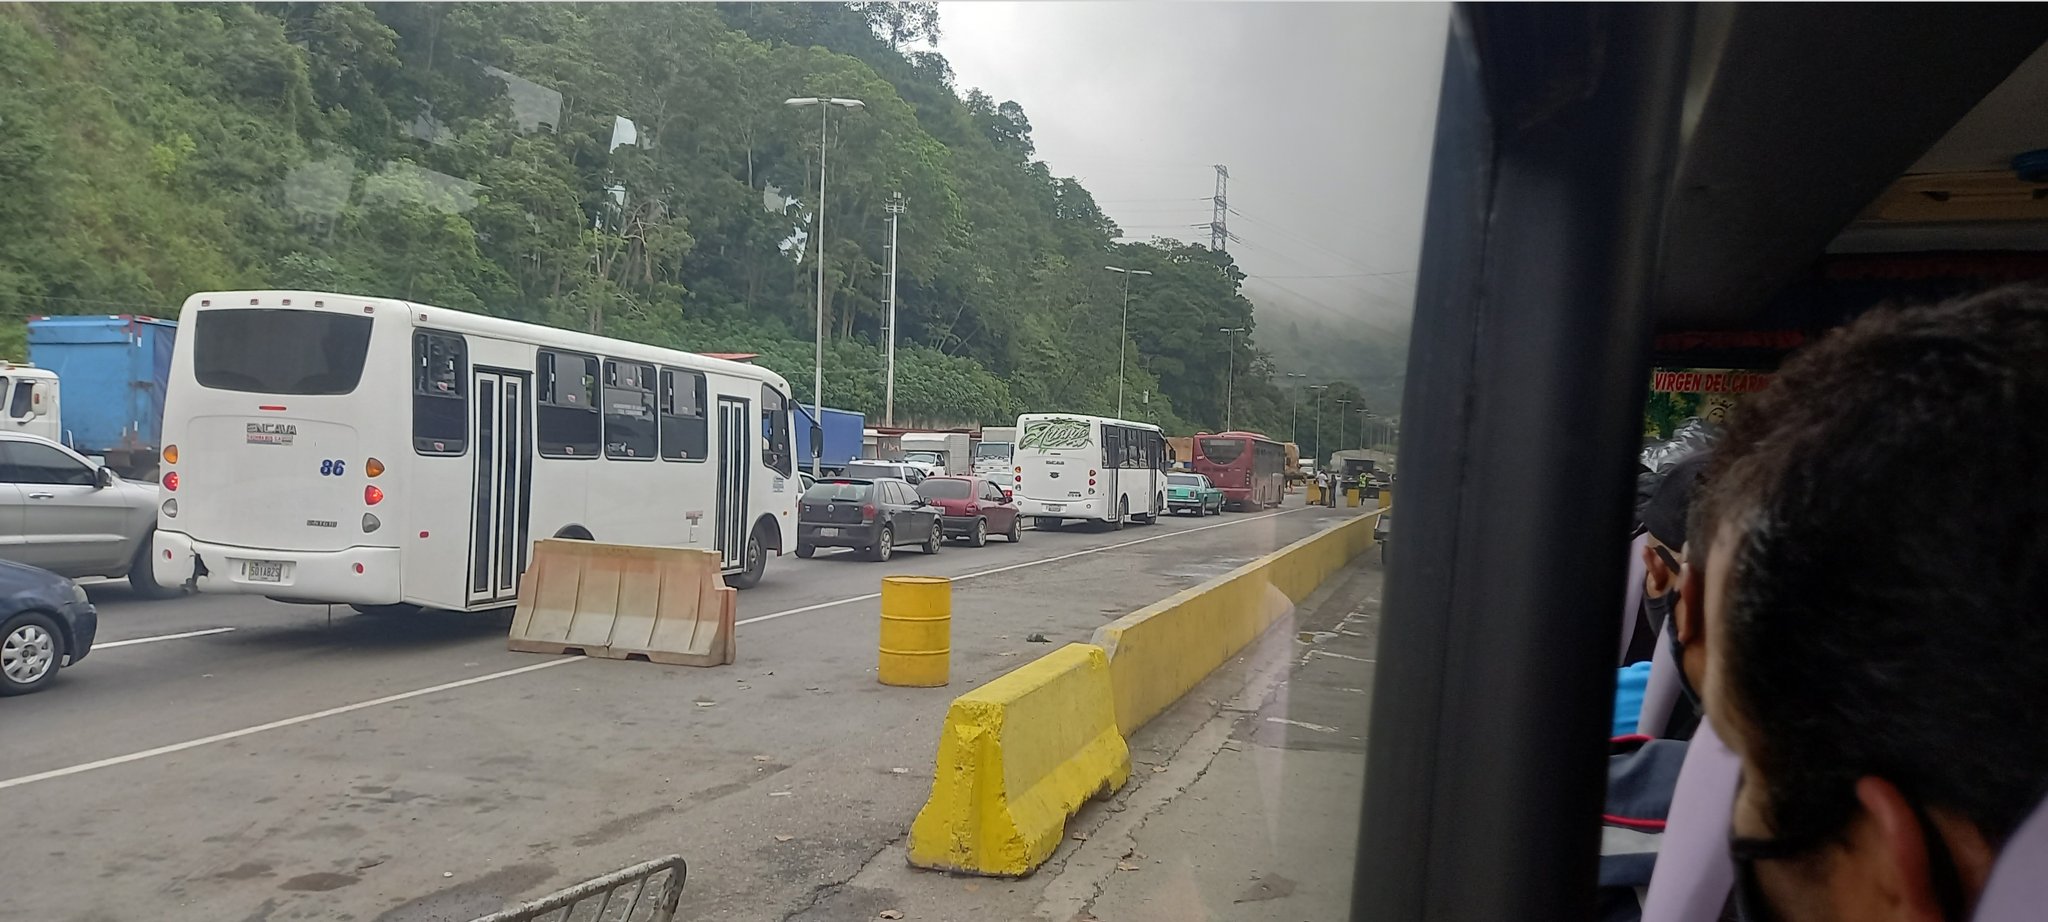 Salvoconducto para entrar a Caracas - Salvoconducto para entrar a Caracas